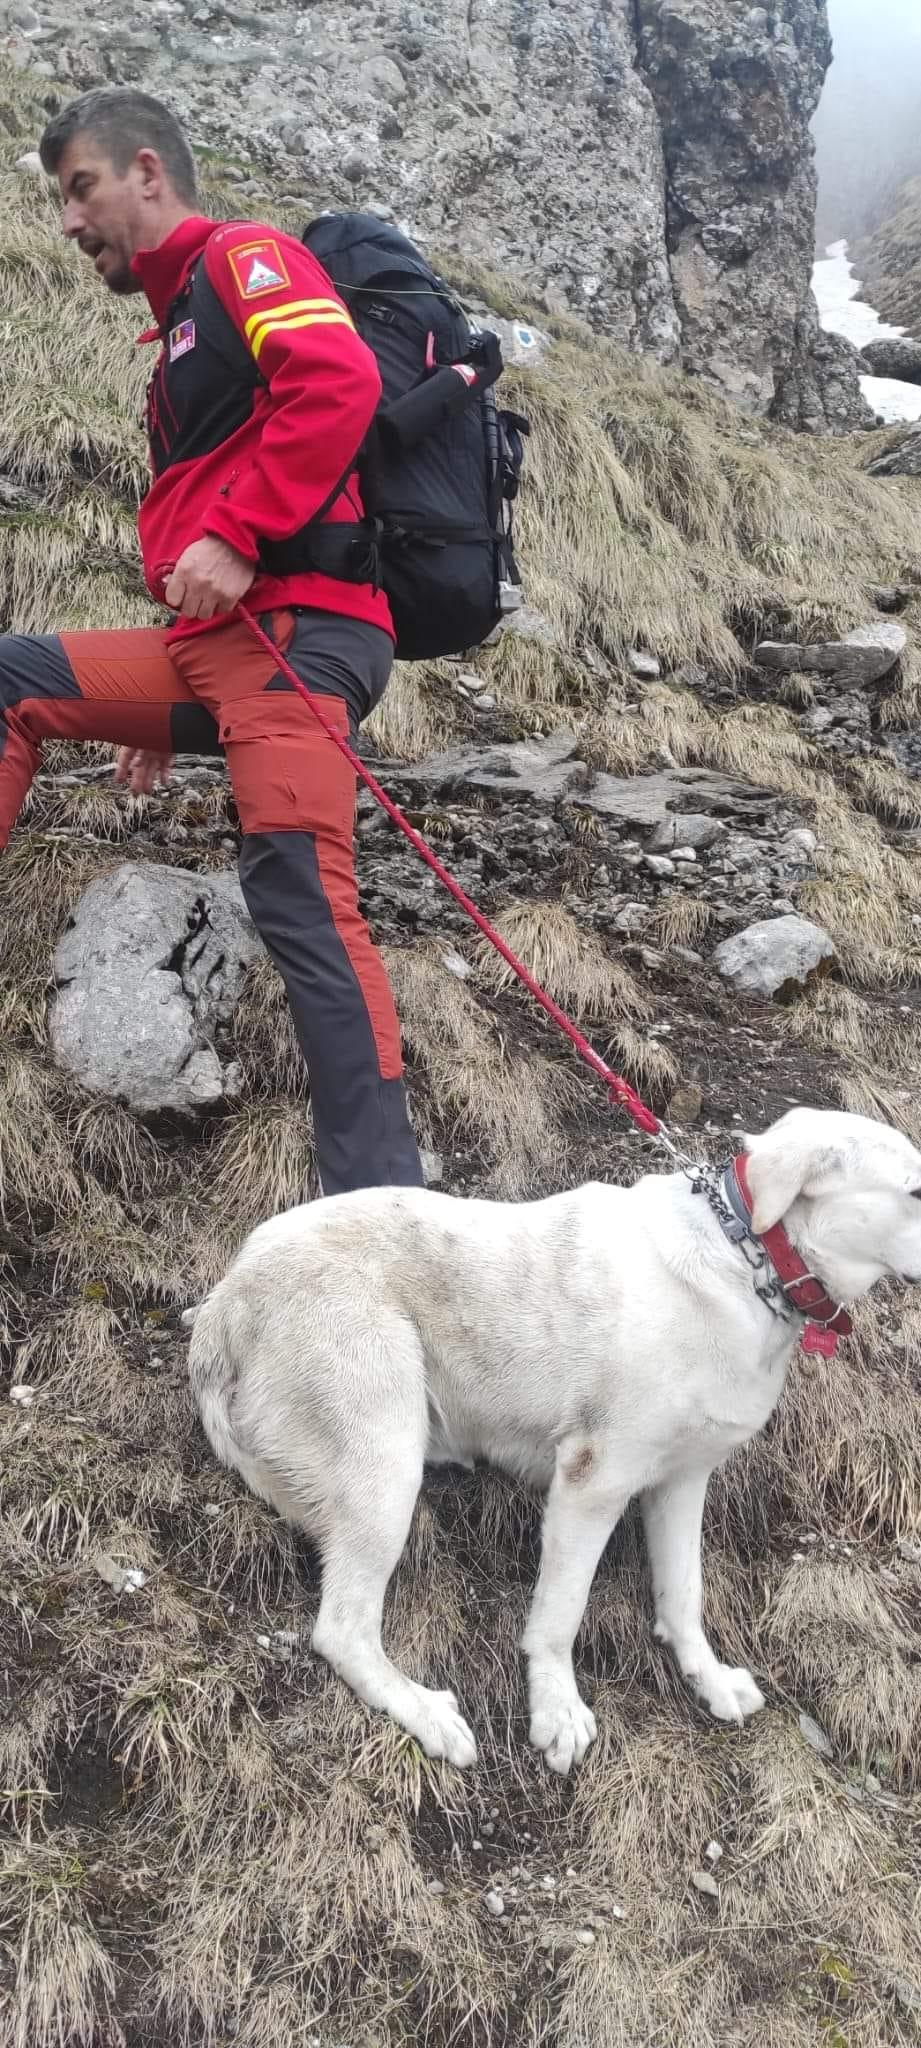 Misiune cu final fericit. Cățeluș salvat dintr-o prăpastie din Bucegi, după ce a alunecat aproape 200 de metri